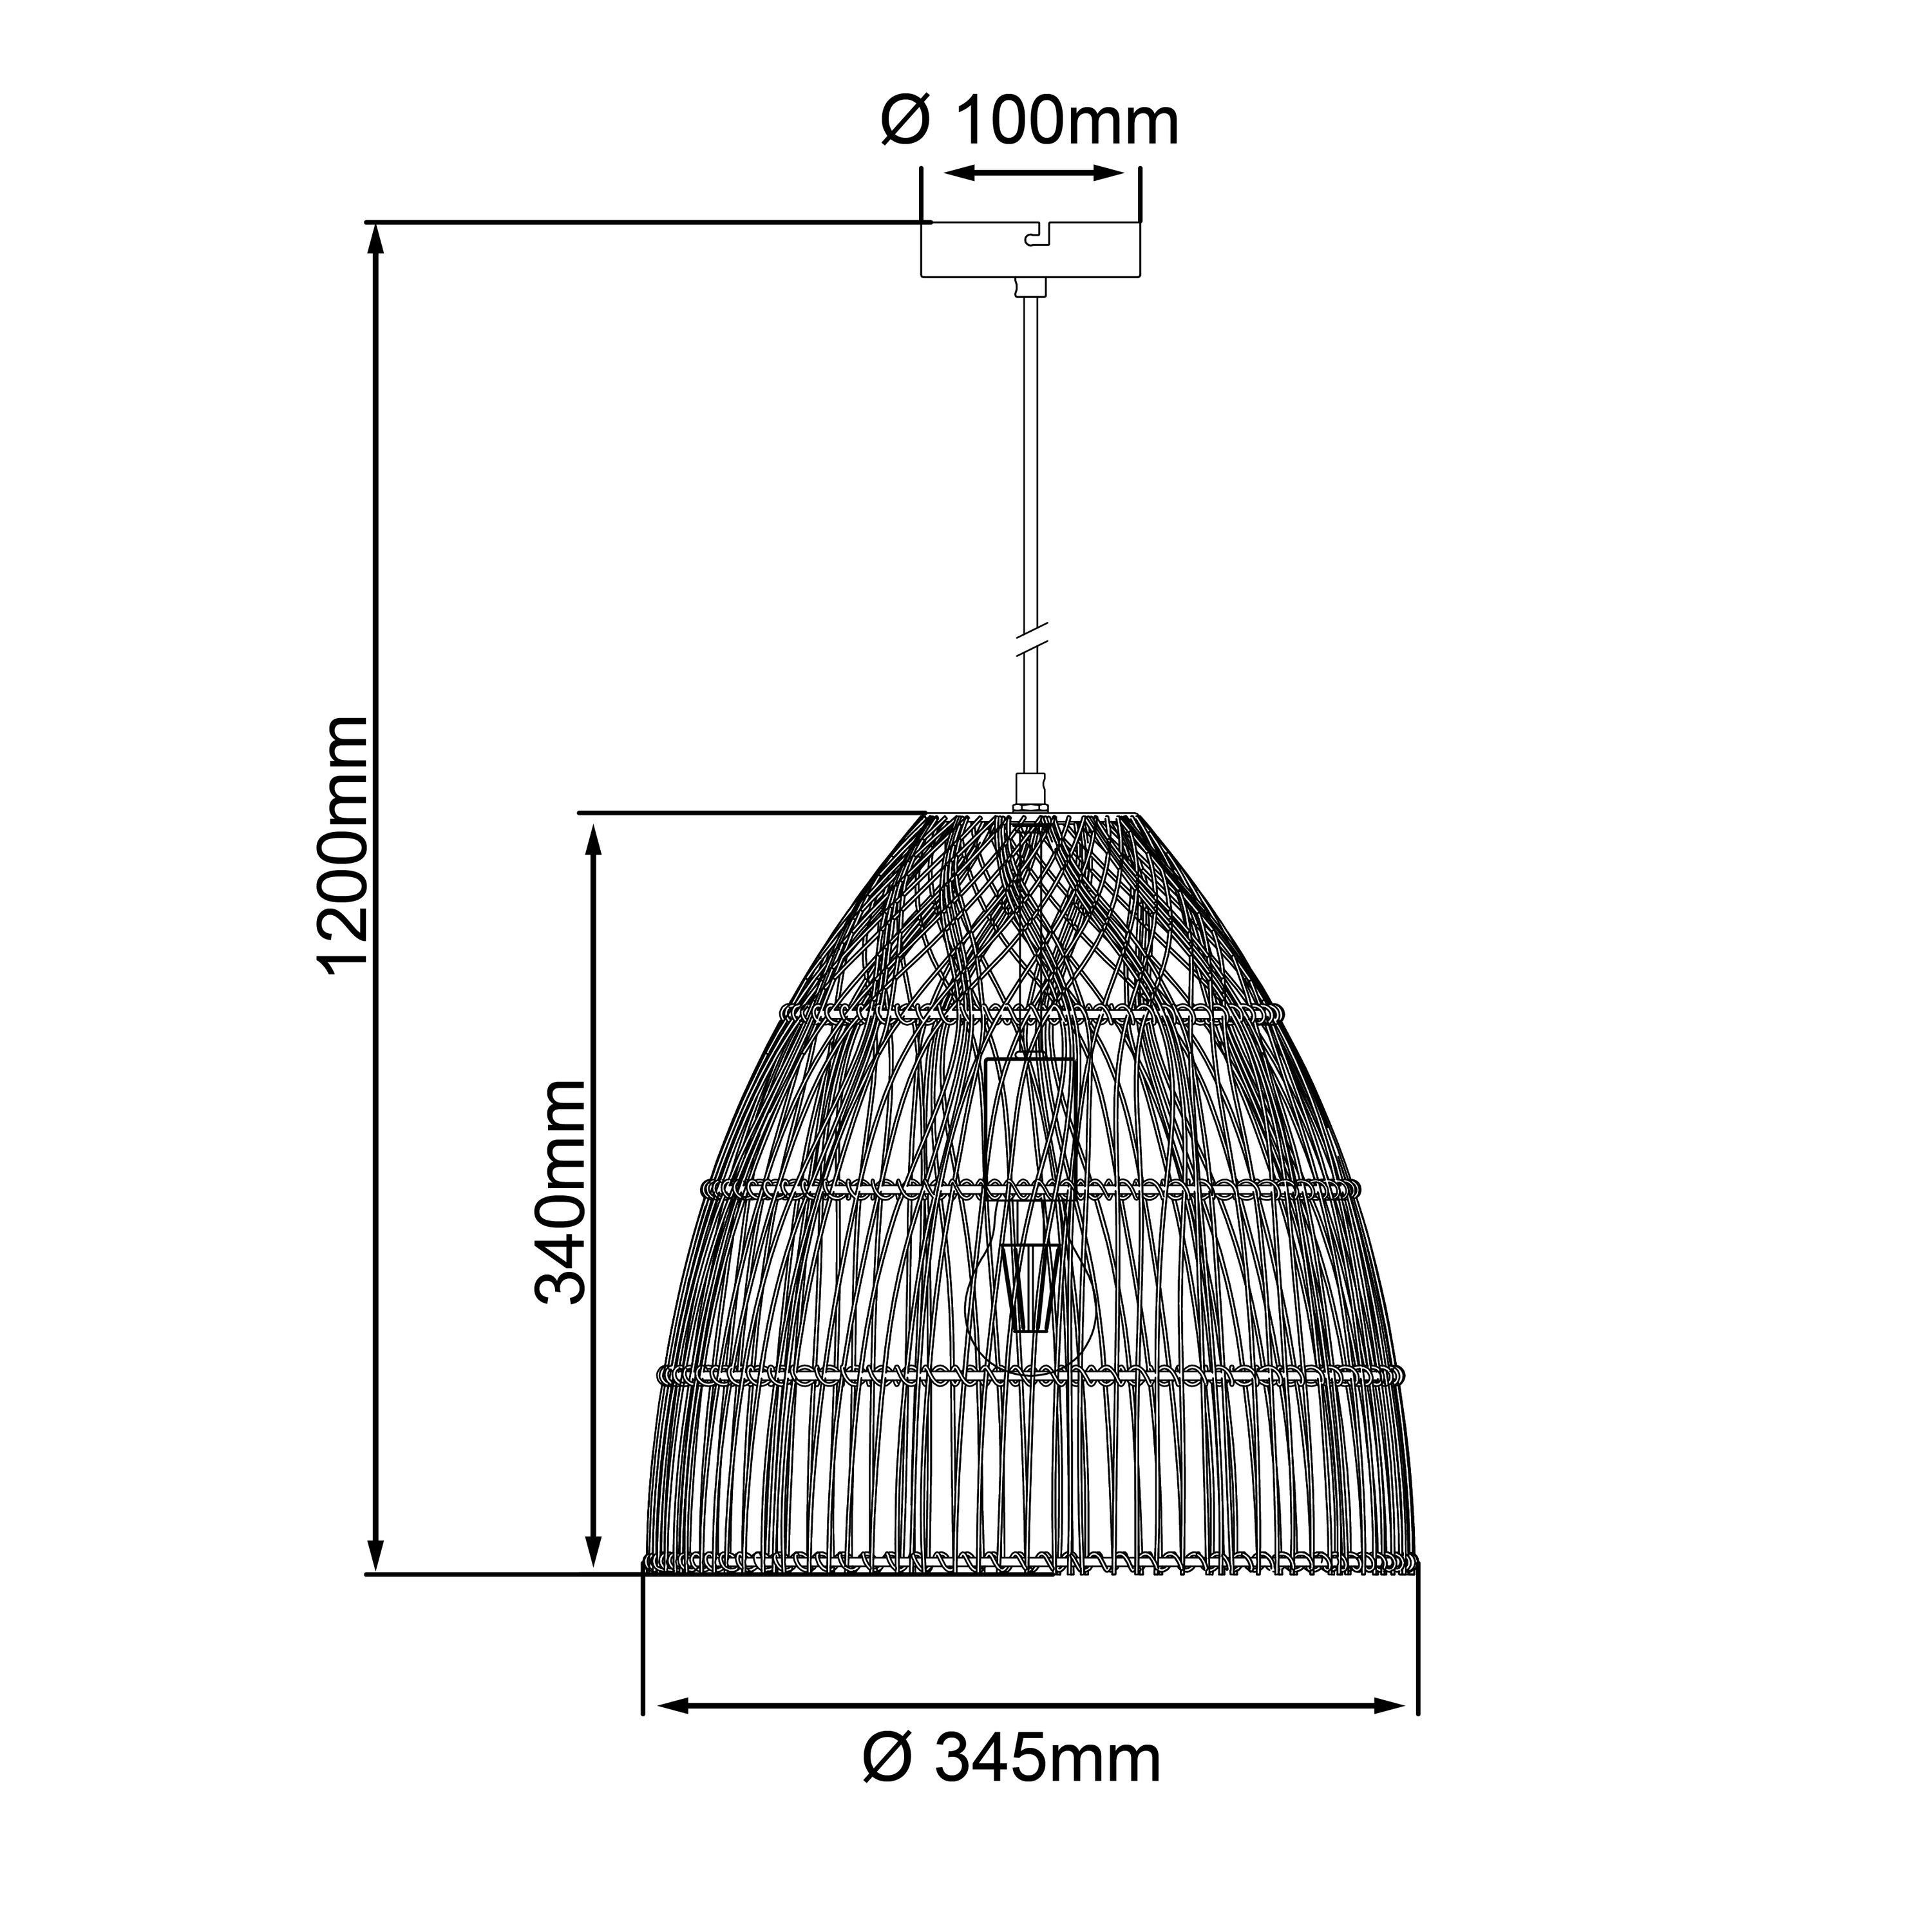 Brilliant Pendelleuchte Minster, A60, 35cm Kabel Lampe, Minster natur/weiß, E27, Pendelleuchte 1x 25W